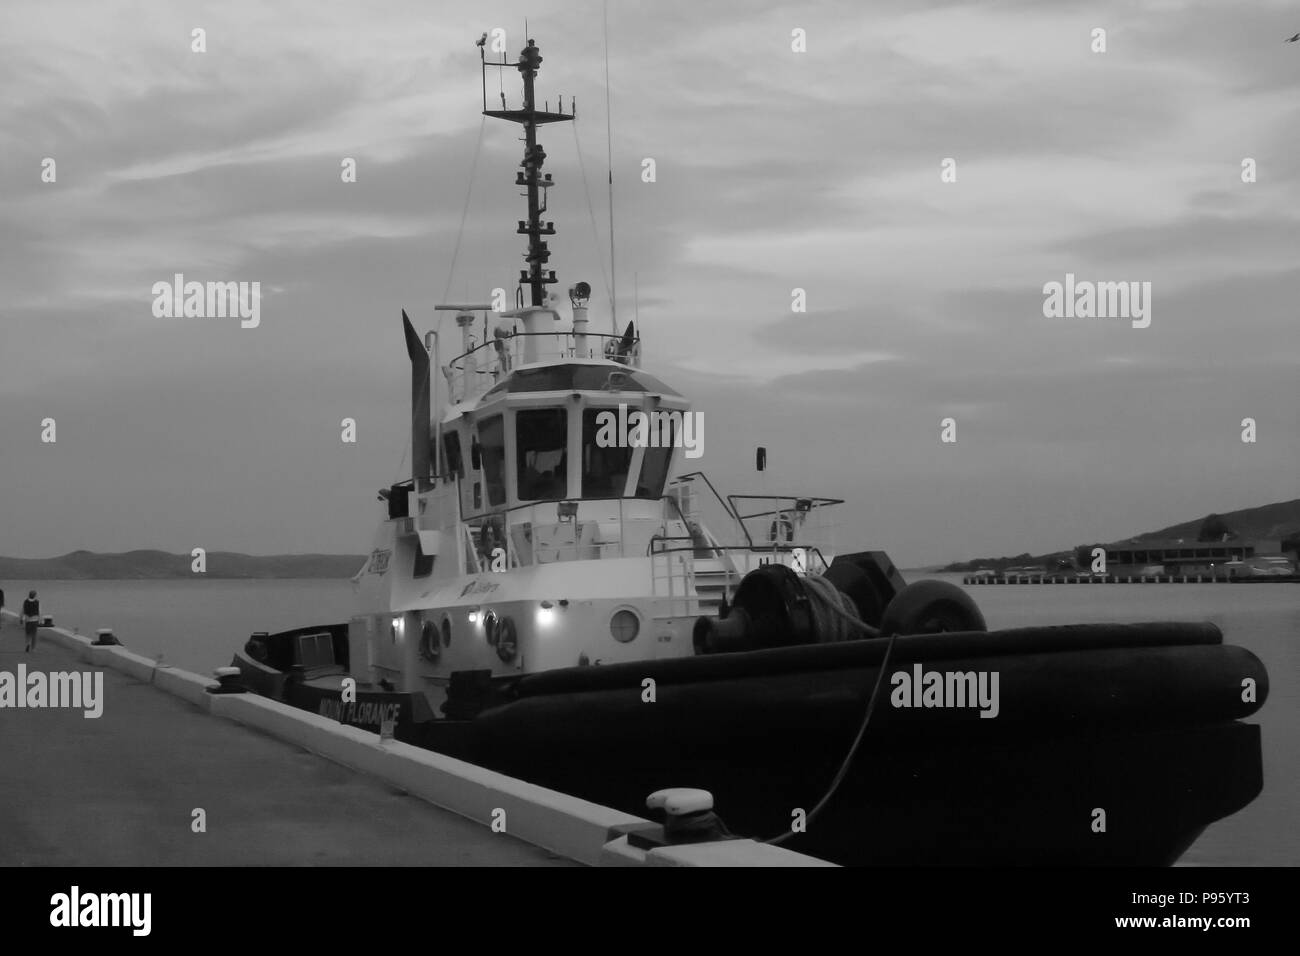 Immagine in bianco e nero del rimorchiatore Porto di Hobart preso al mattino presto prima che la giornata di lavoro inizia.? Foto Stock